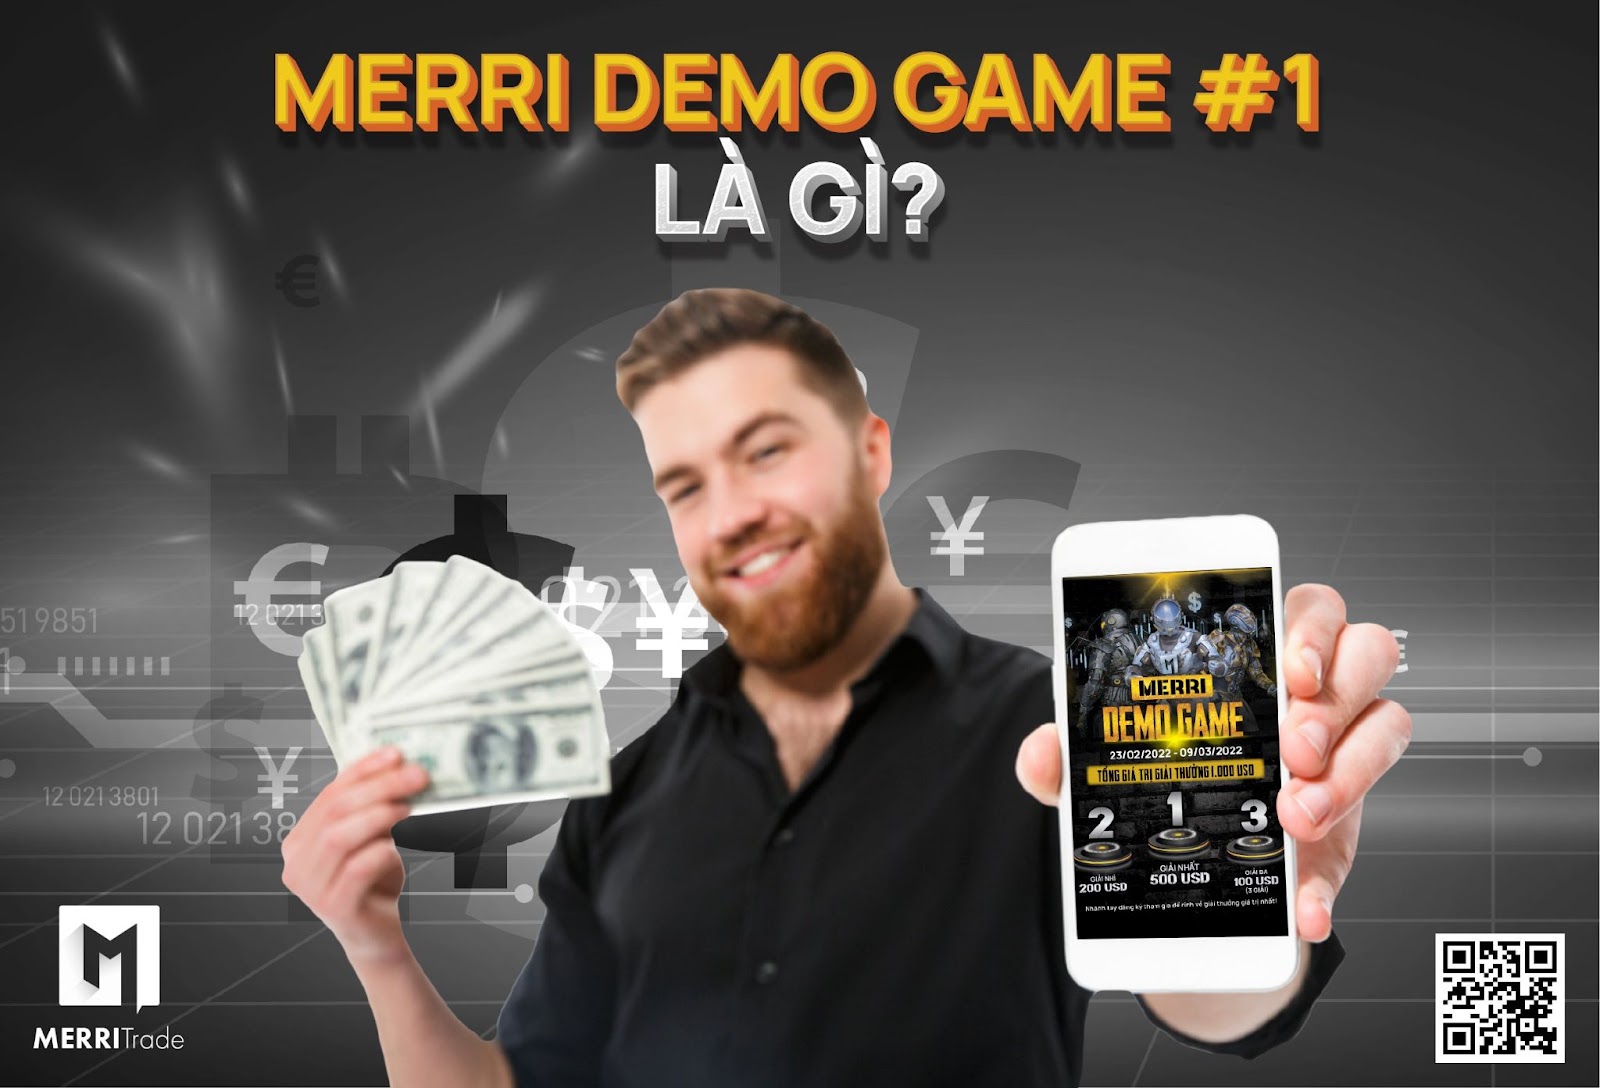 Merri Demo Game là gì? Thi Demo và nhận thưởng thật đến $500? hình - vtradetop.com